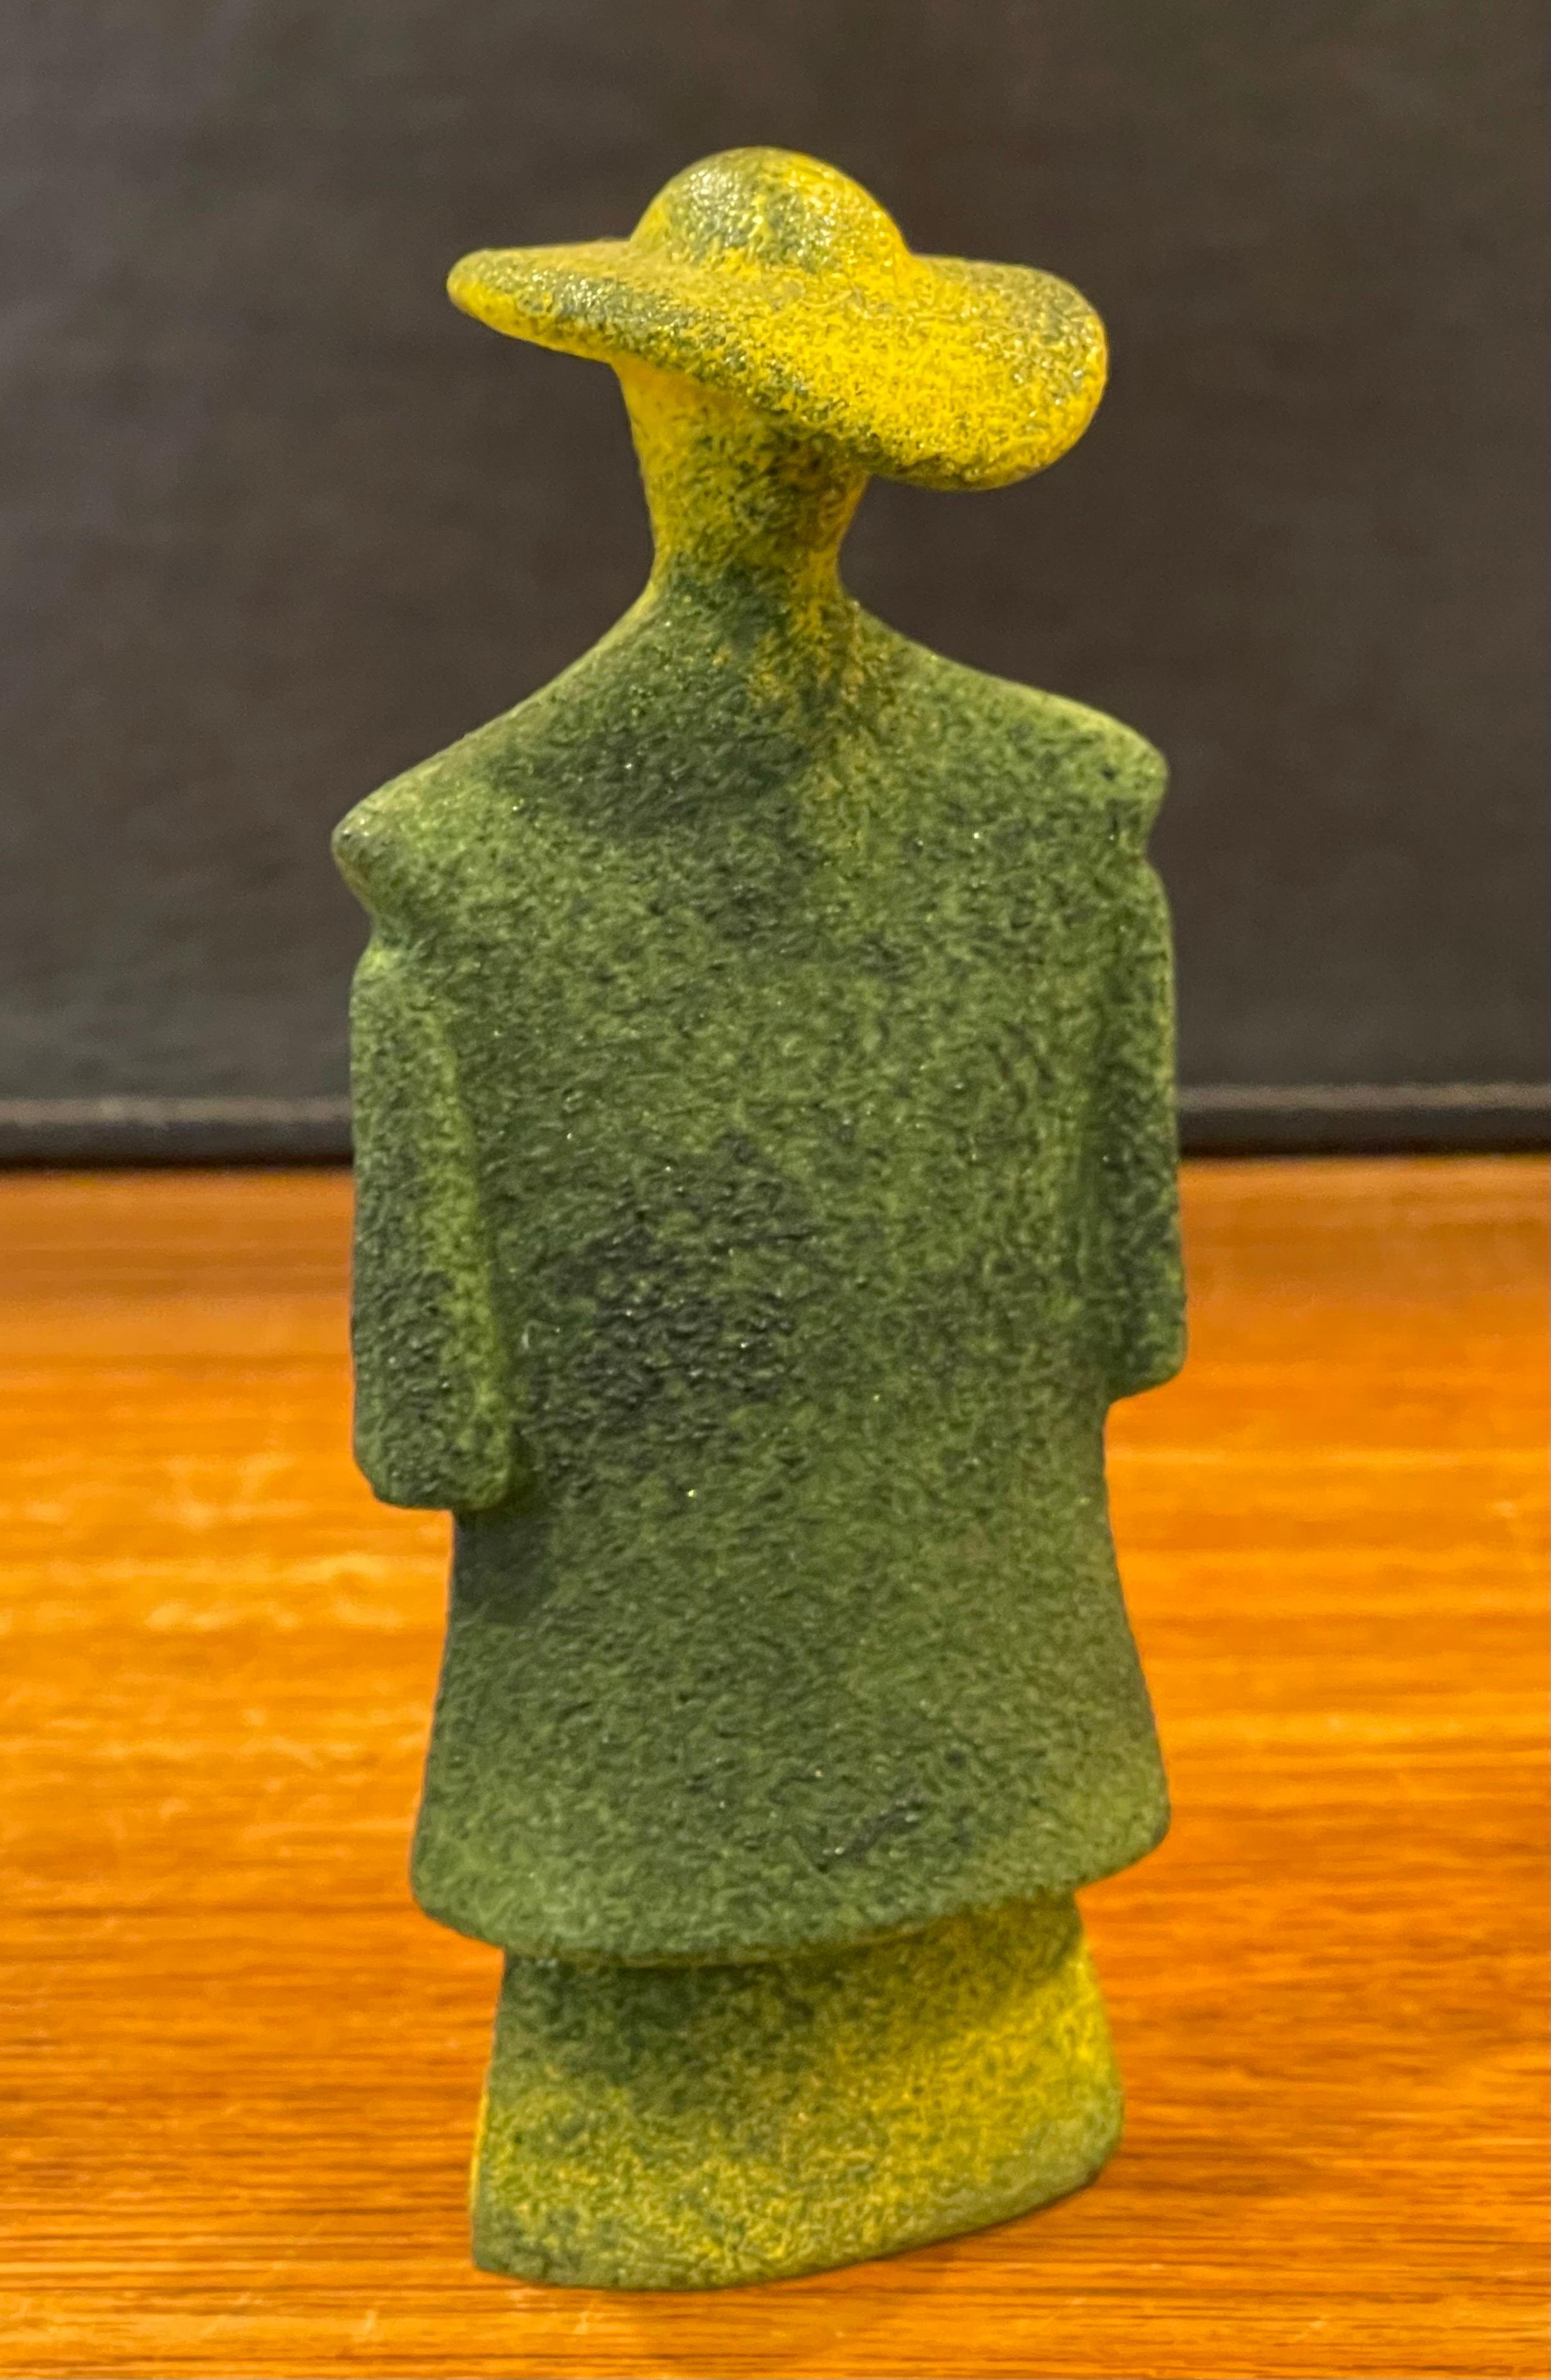 Swedish Poncho Green Art Glass Catwalk Sculpture by Kjell Engman for Kosta Boda Sweden For Sale